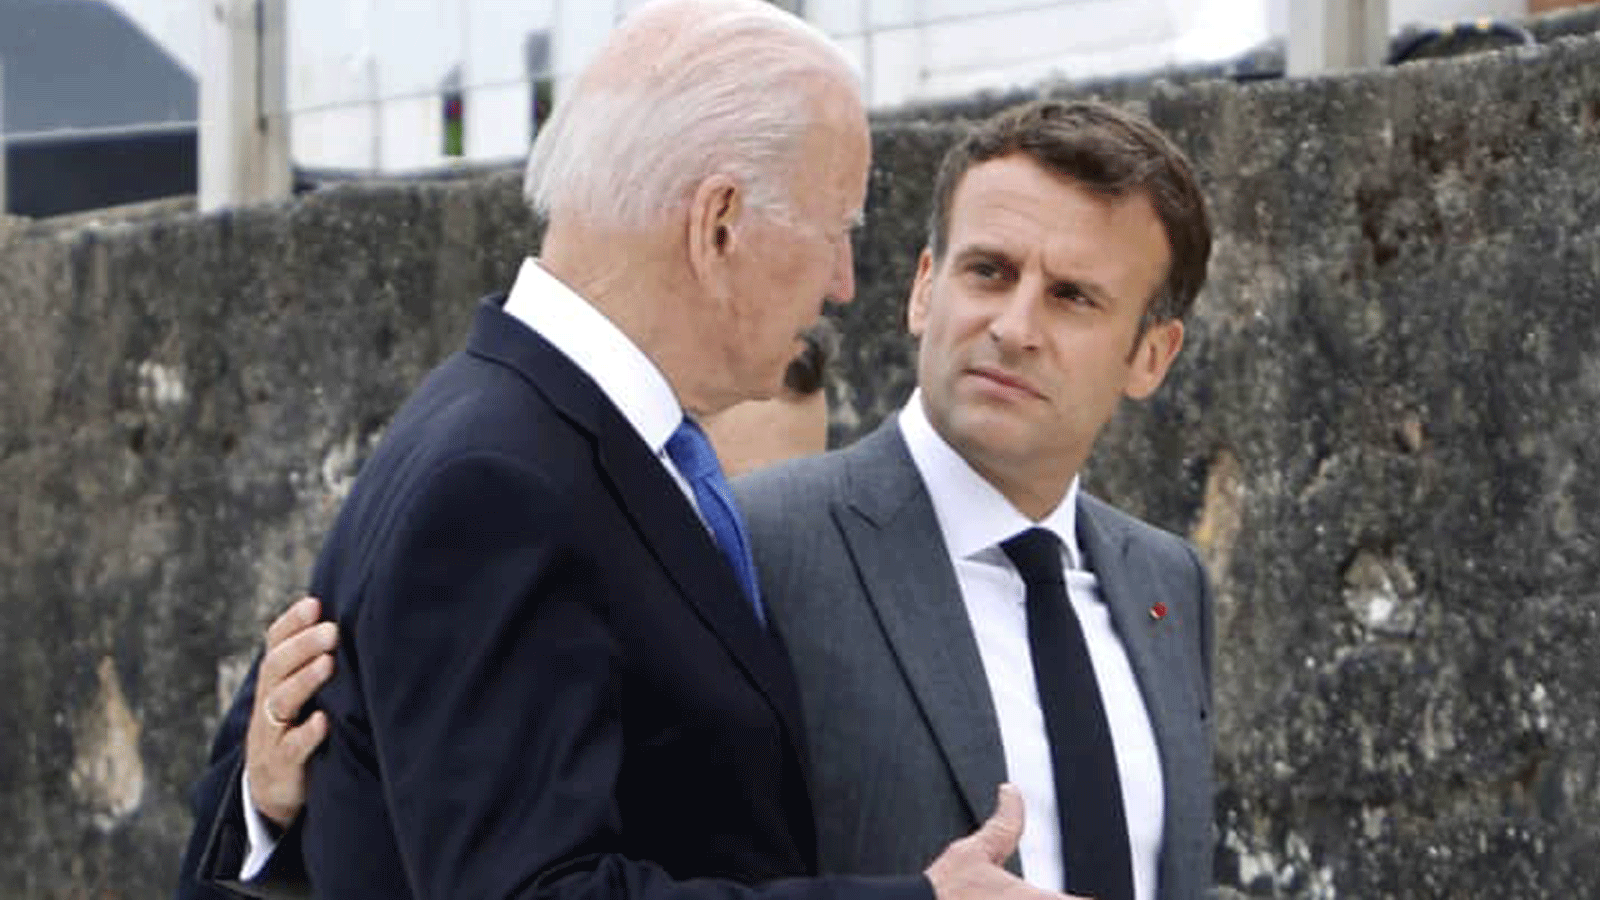  الرئيس الأميركي جو بايدن (إلى اليسار) والرئيس الفرنسي إيمانويل ماكرون يتحدثان بعيد التقاط الصورة الجامعة في بداية قمة مجموعة السبع في خليج كاربيس/ كورنوال. 11 حزيران/ يونيو 2021